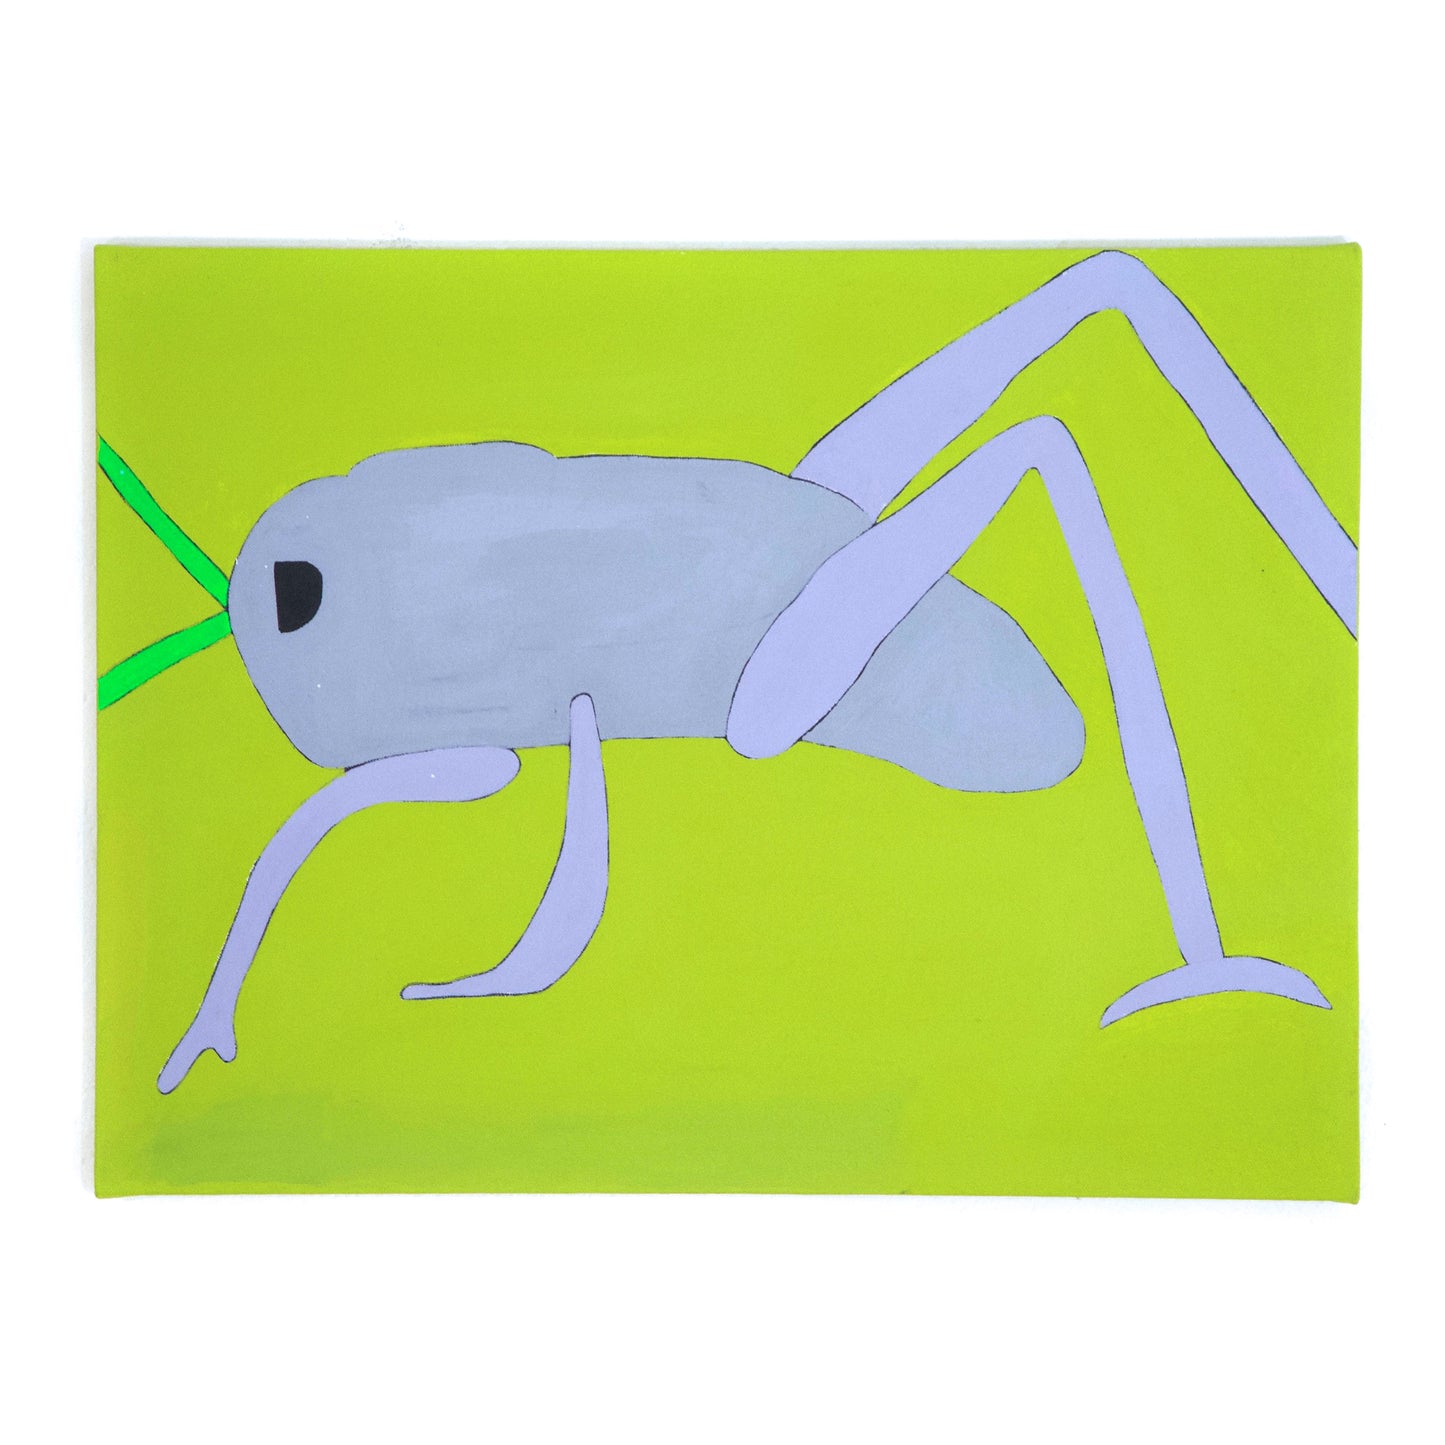 Grasshopper (P0054)